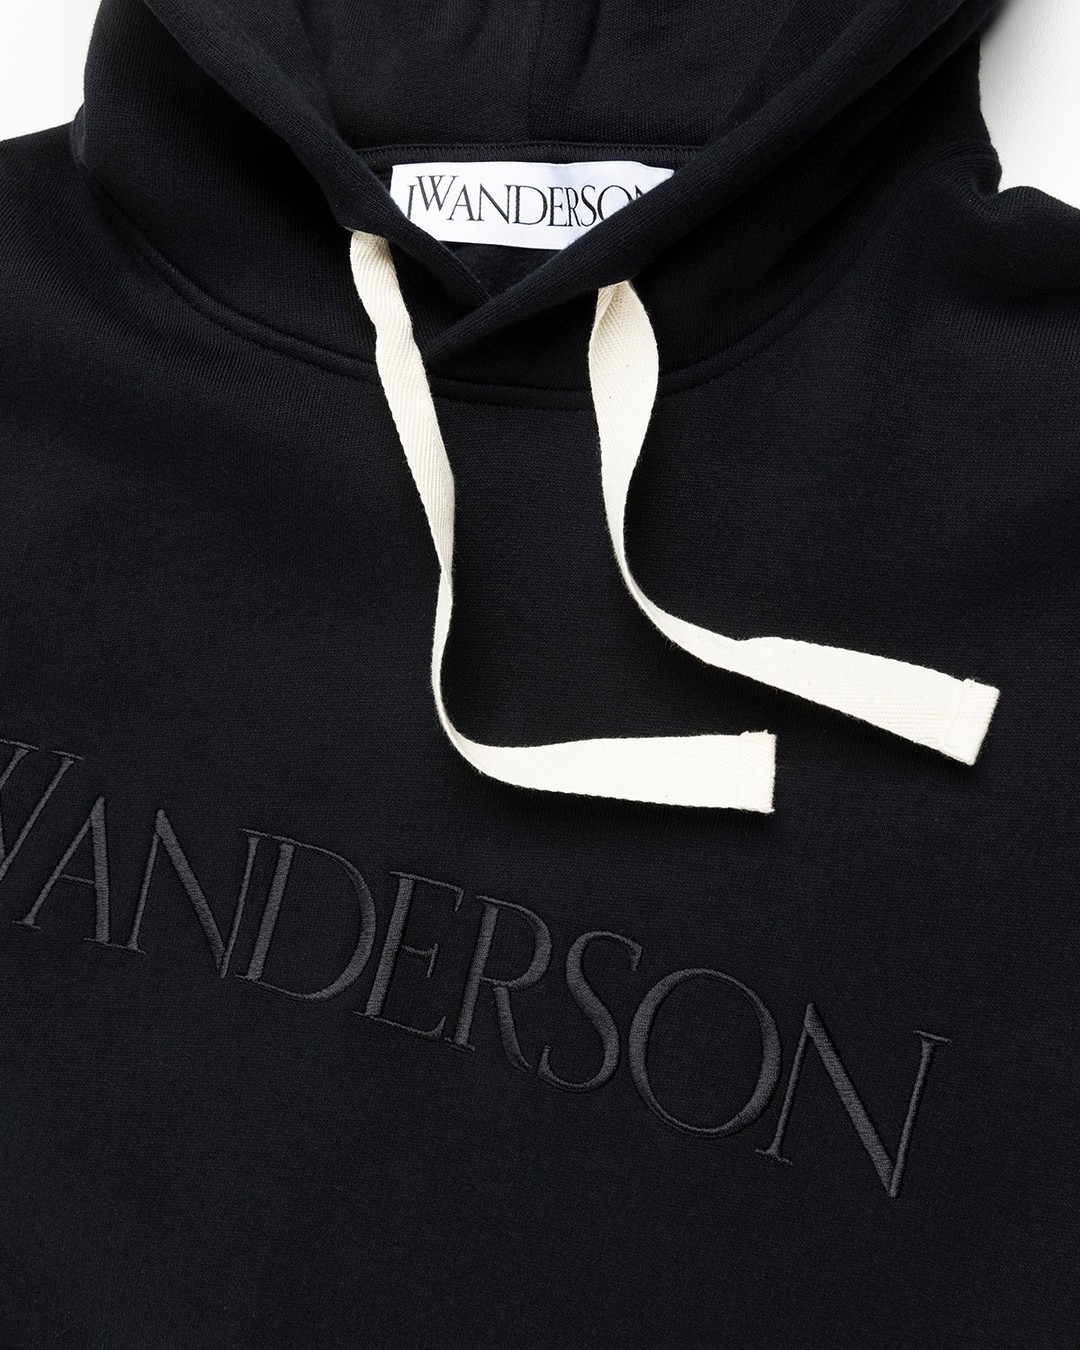 J.W. Anderson – Classic Logo Hoodie Black - Hoodies - Black - Image 3